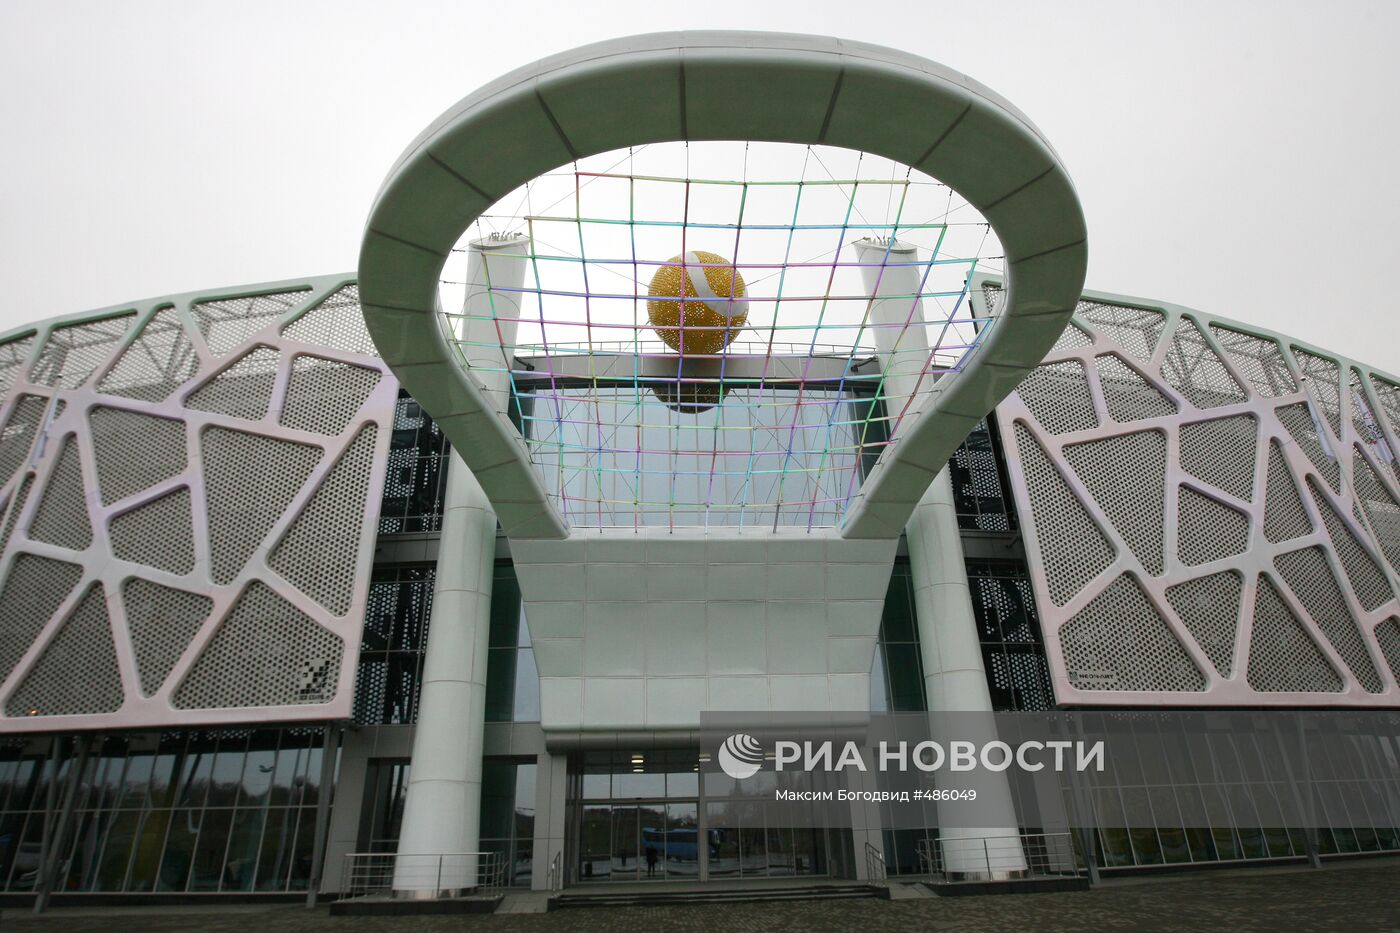 Объекты, построенные к Универсиаде - 2013 в Казани